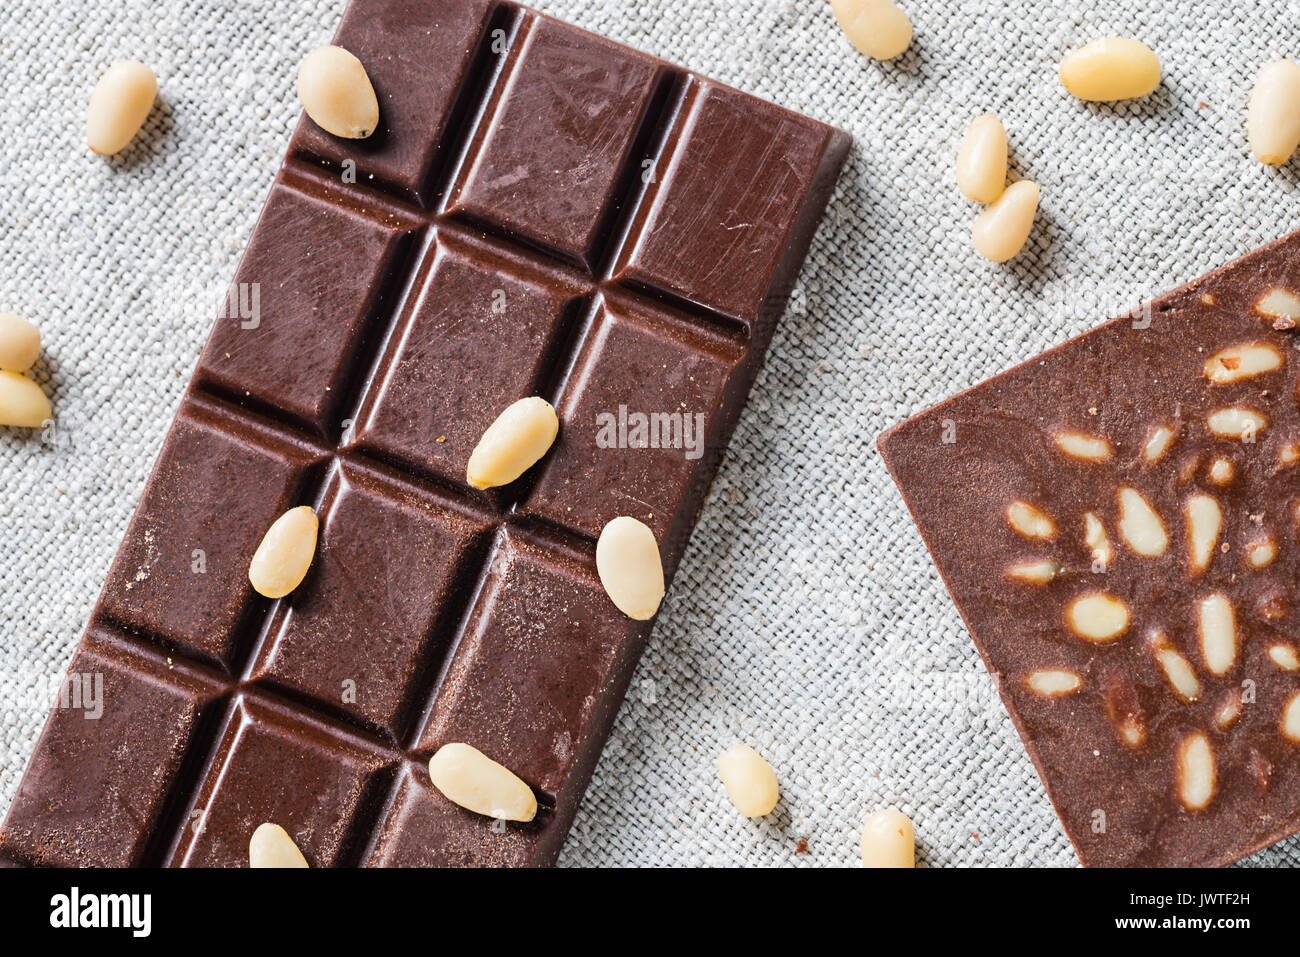 Bars von Raw vegan handgemachte Schokolade mit Pinienkernen auf Stoff  Hintergrund. Vegetarische Konzept der gesunden Ernährung. Ansicht von oben  Stockfotografie - Alamy